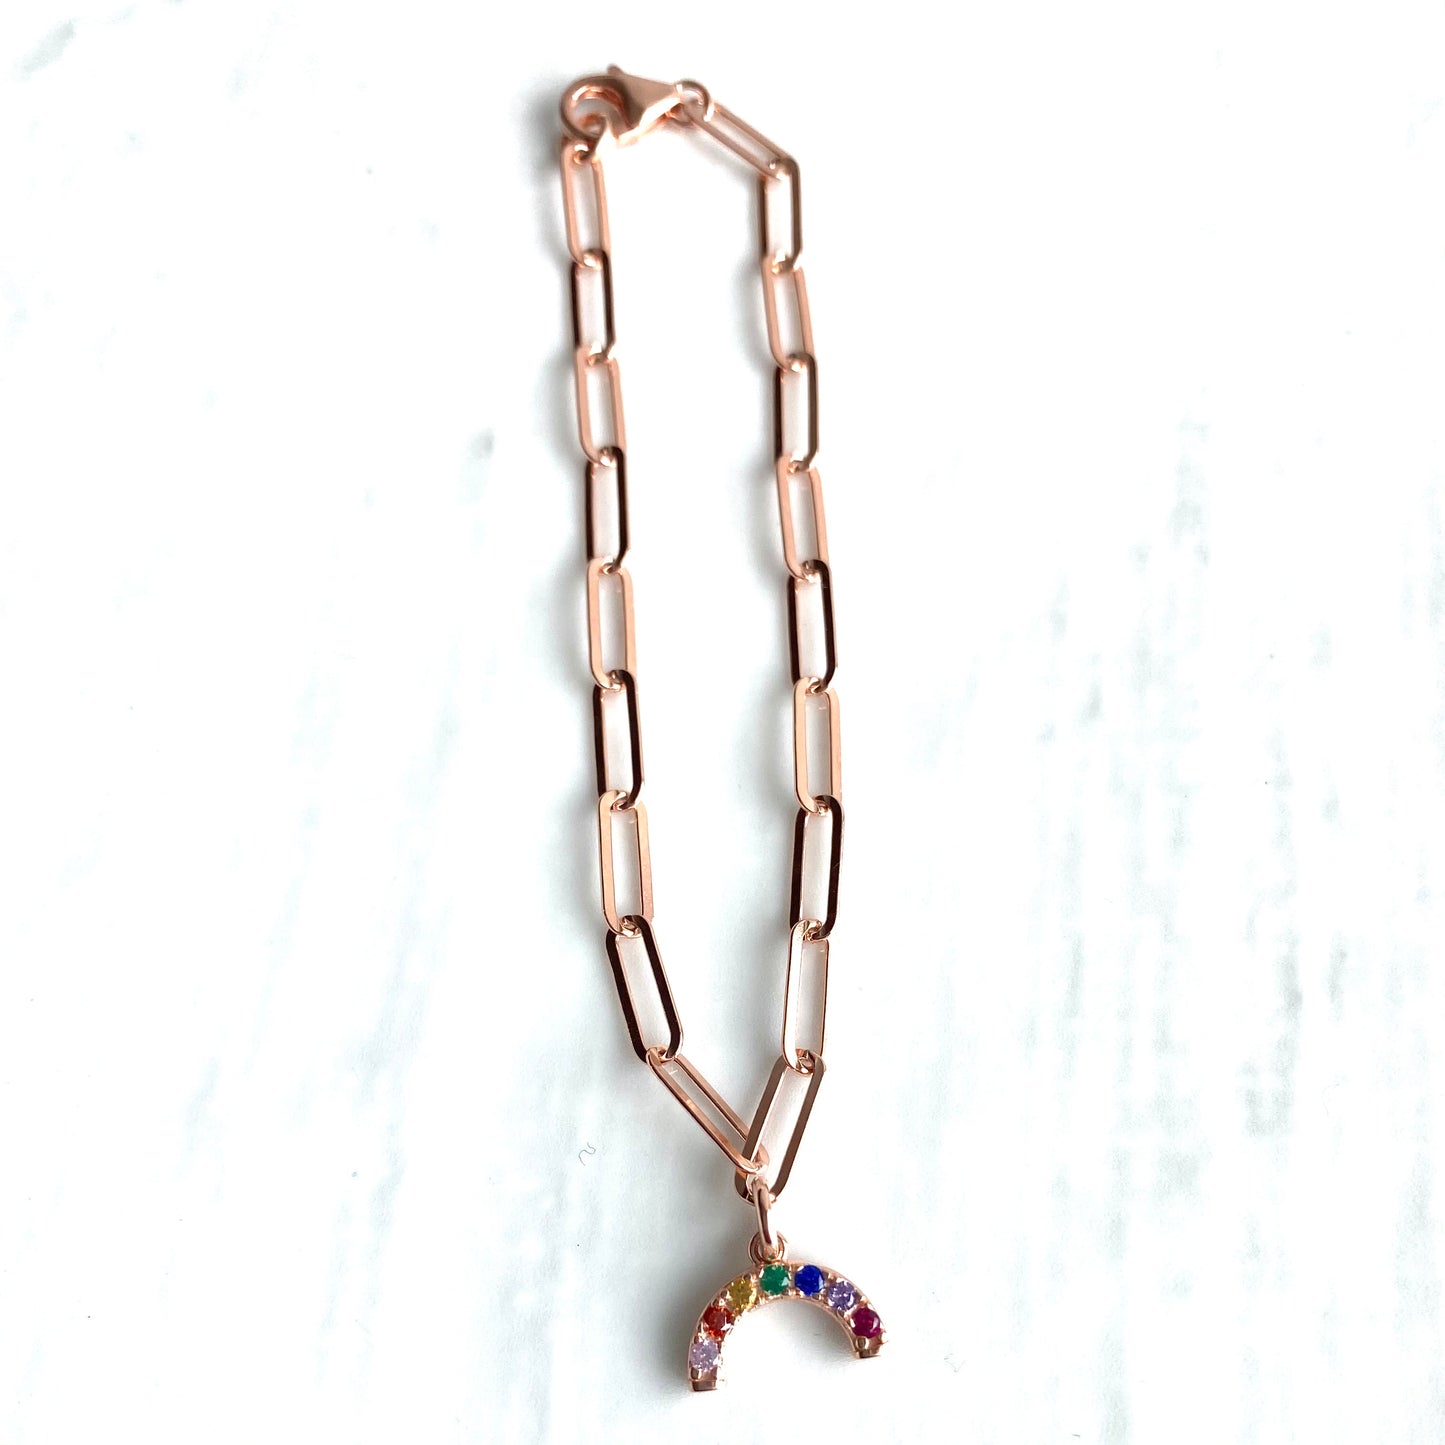 Links bracelet with mini rainbow charm